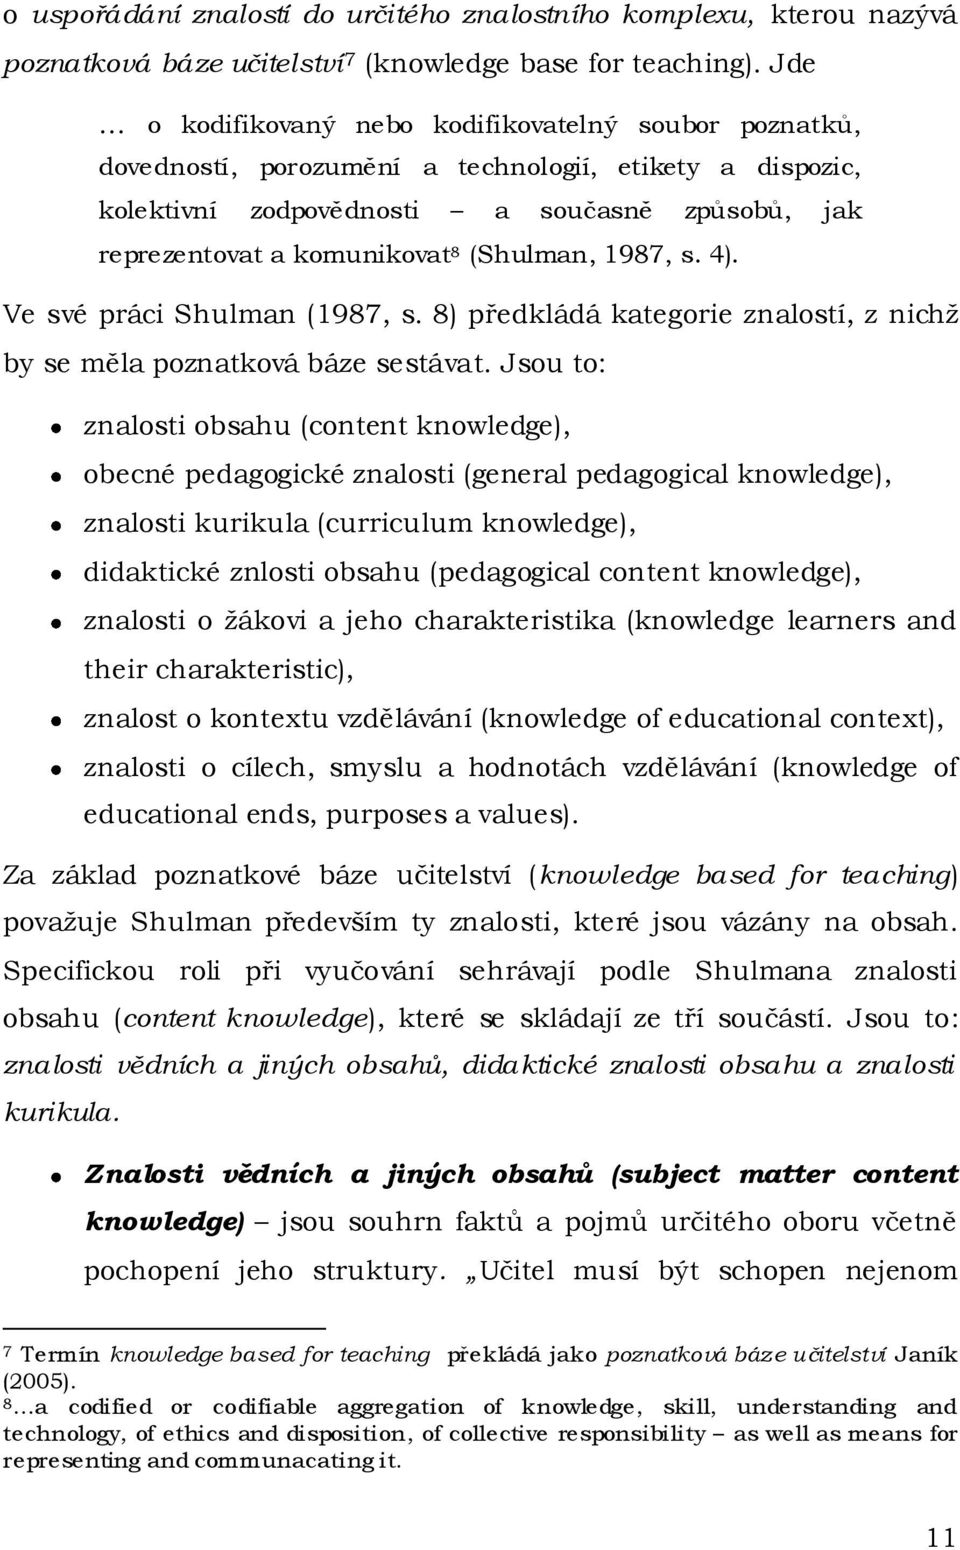 (Shulman, 1987, s. 4). Ve své práci Shulman (1987, s. 8) předkládá kategorie znalostí, z nichž by se měla poznatková báze sestávat.